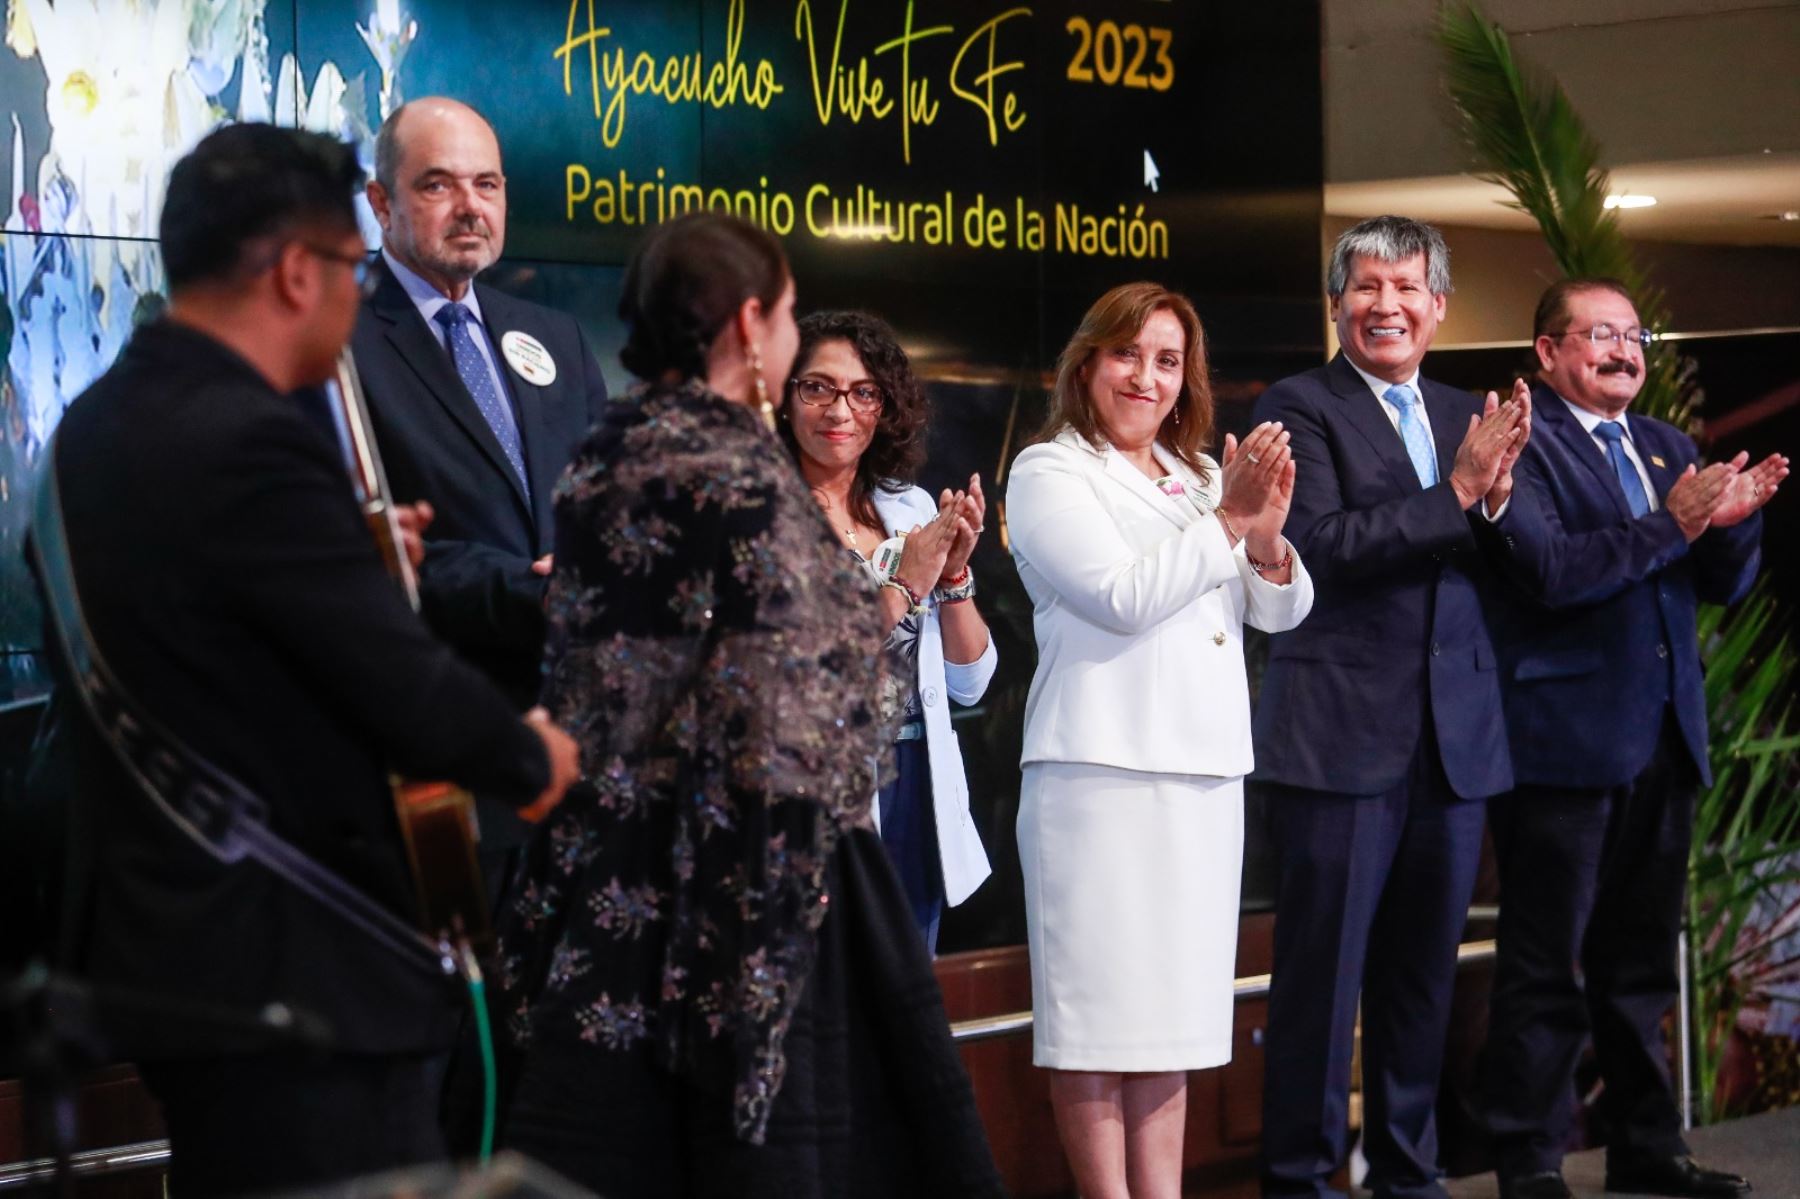 Presidenta de la república, Dina Boluarte, participó en ceremonia de lanzamiento de la Semana Santa "Ayacucho Vive tu Fe 2023" Foto: ANDINA/Prensa Presidencia